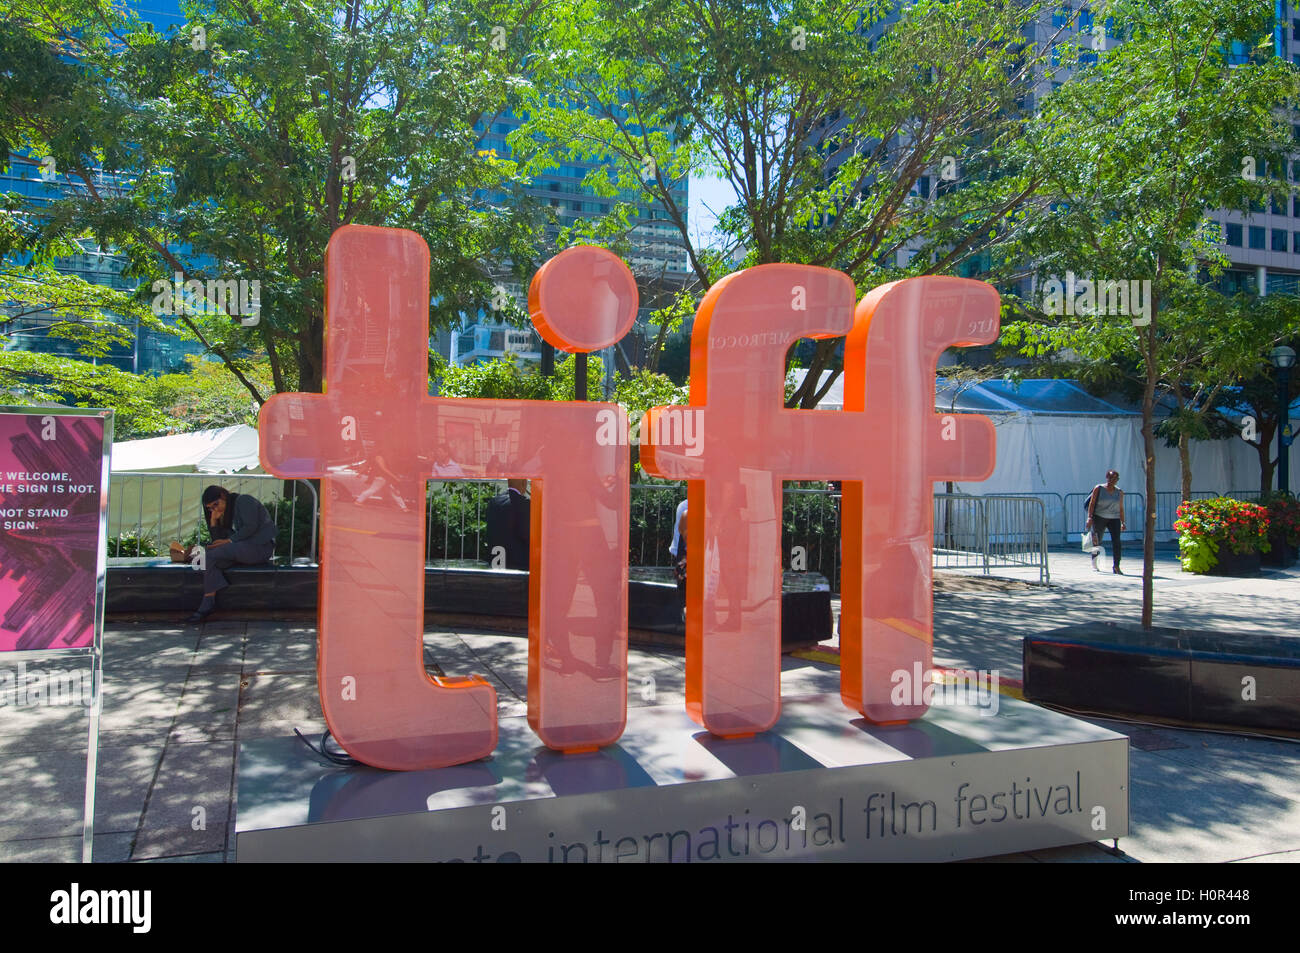 Vues autour de l'Entertainment District durant le TIFF en Toronto, Canada Banque D'Images